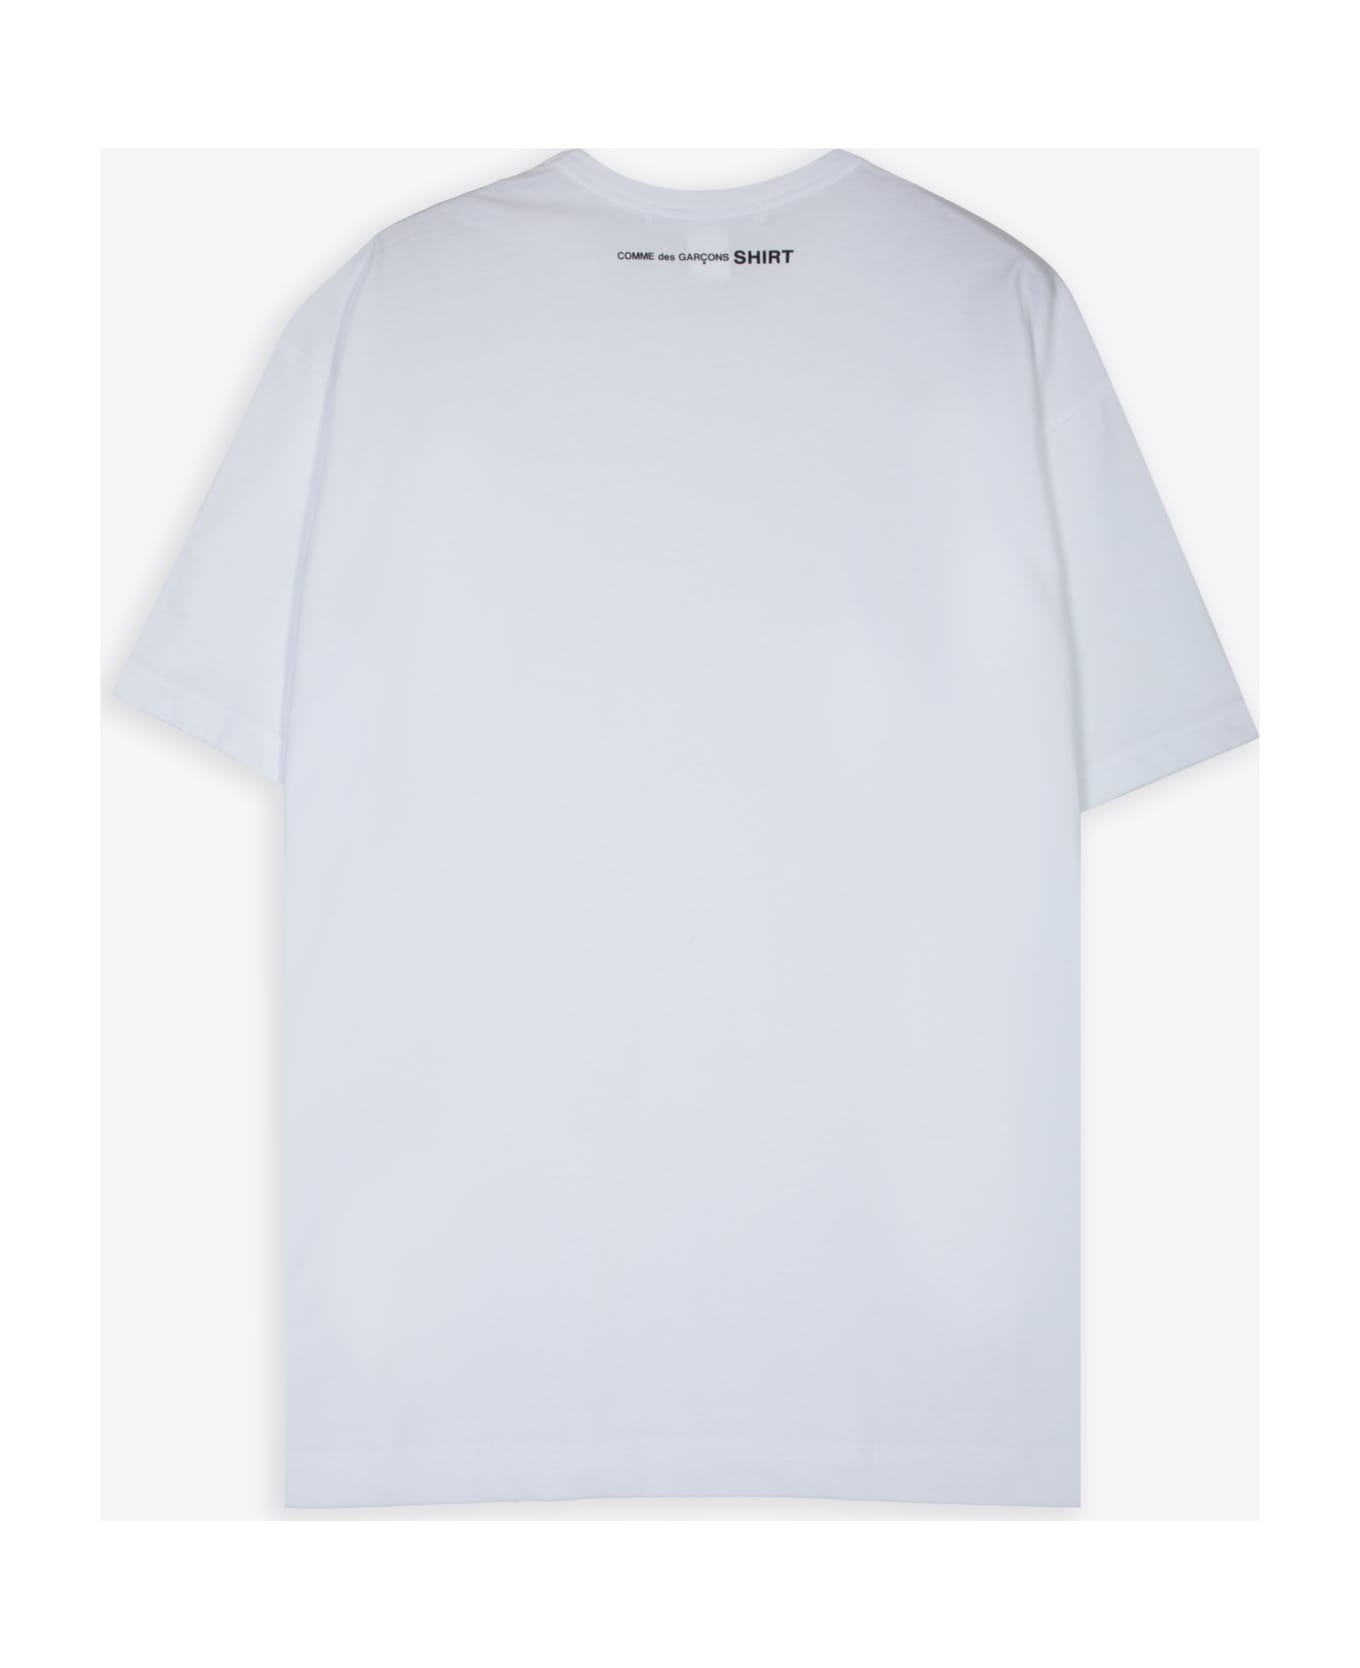 Comme des Garçons Shirt Mens T-shirt Knit White cotton oversize t-shirt with logo - Bianco